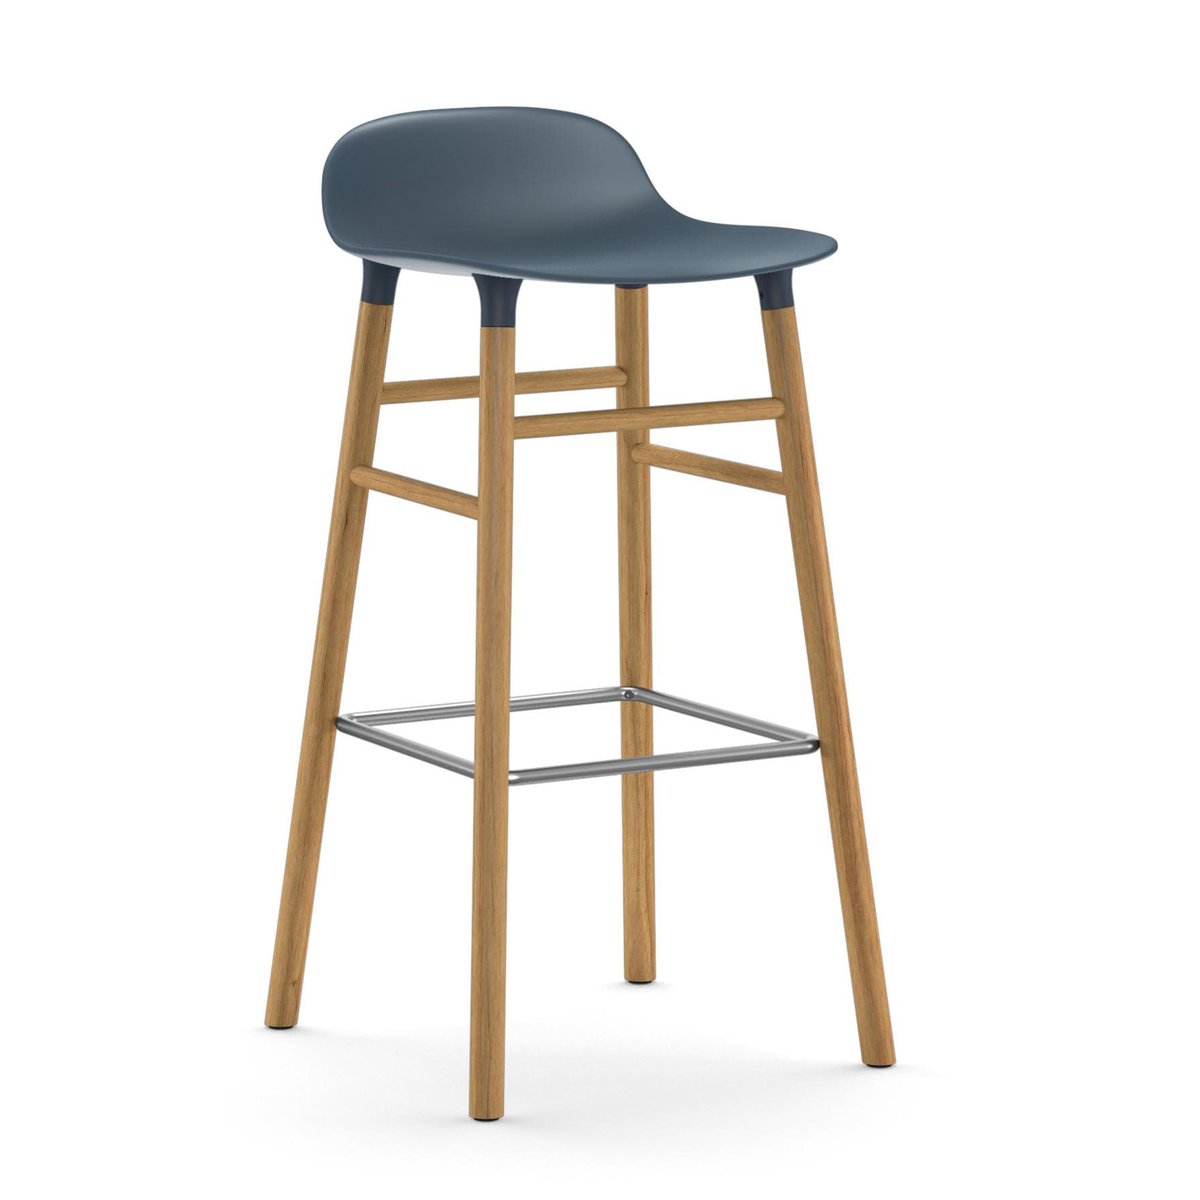 Normann Copenhagen Form Chair barkruk eiken poten blauw